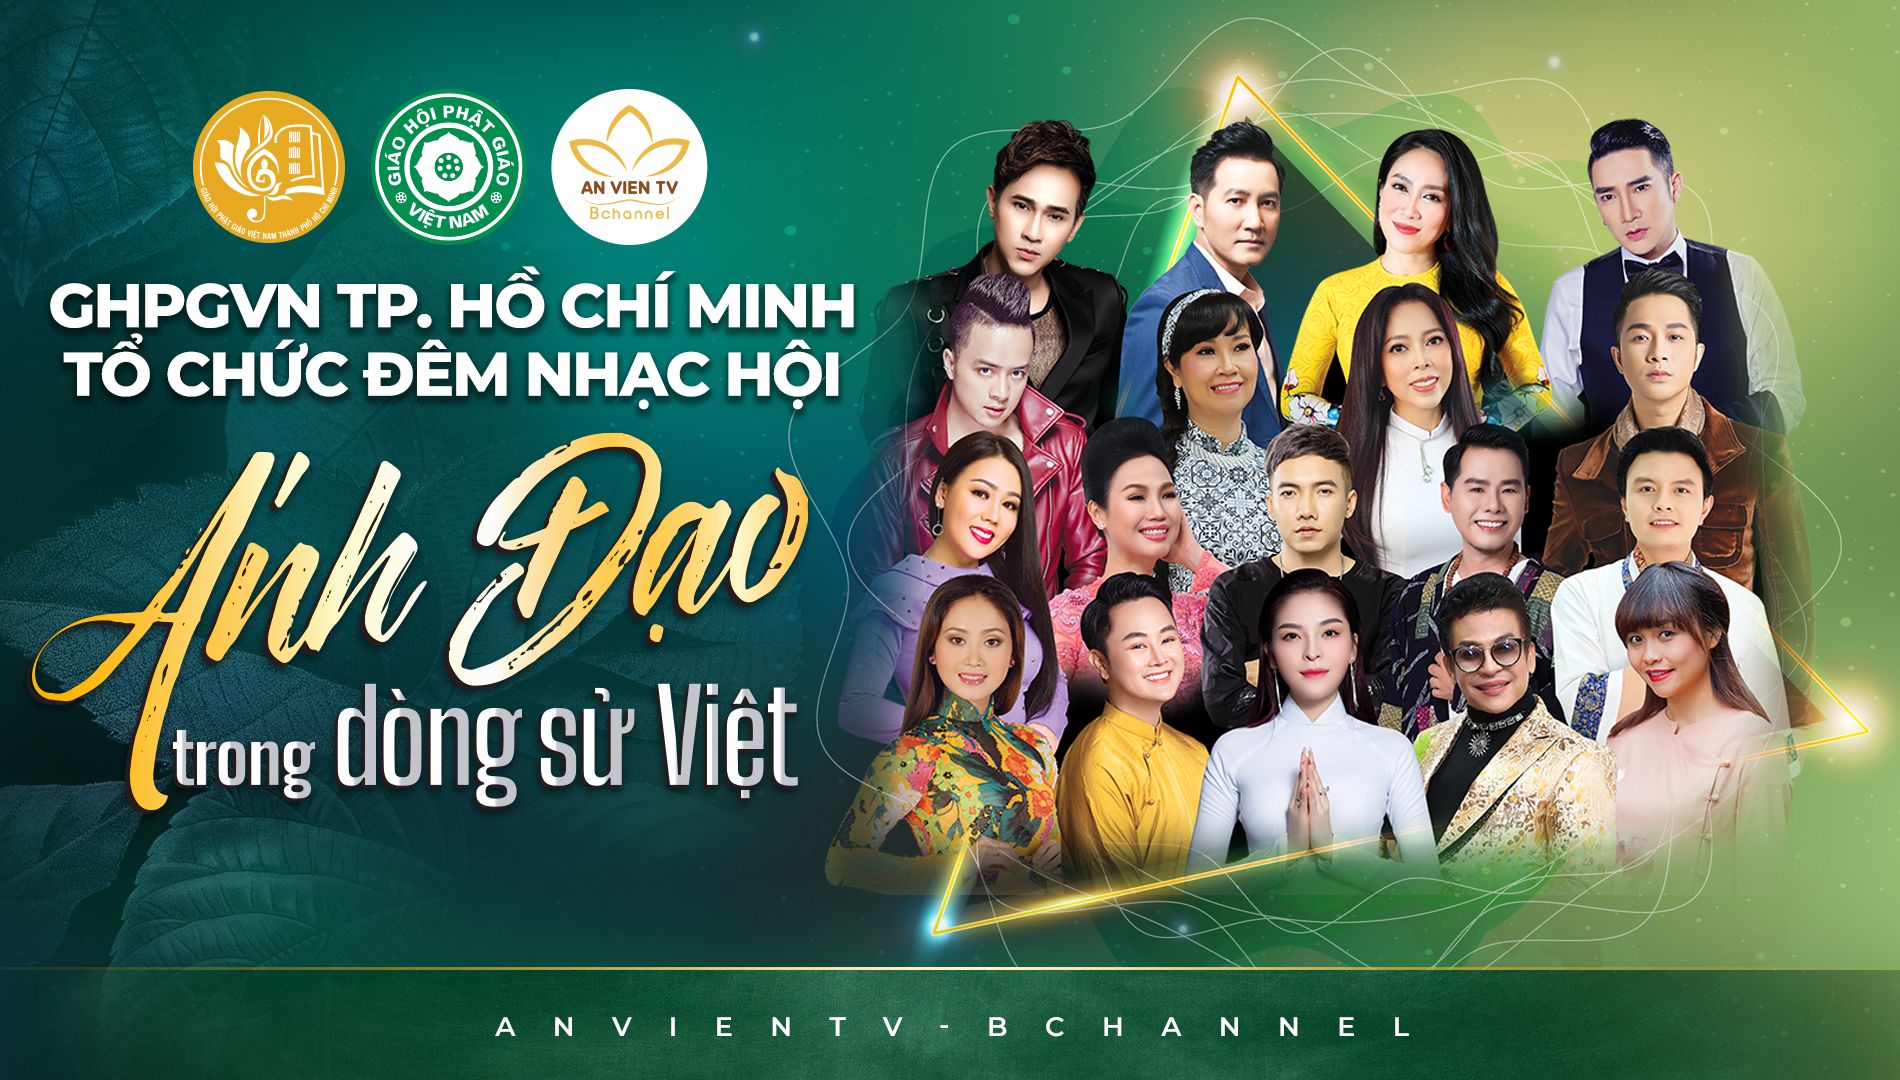 Giáo hội Phật giáo Việt Nam TP. Hồ Chí Minh tổ chức đêm đại nhạc hội, quy tụ dàn sao trẻ xứ phương Nam.